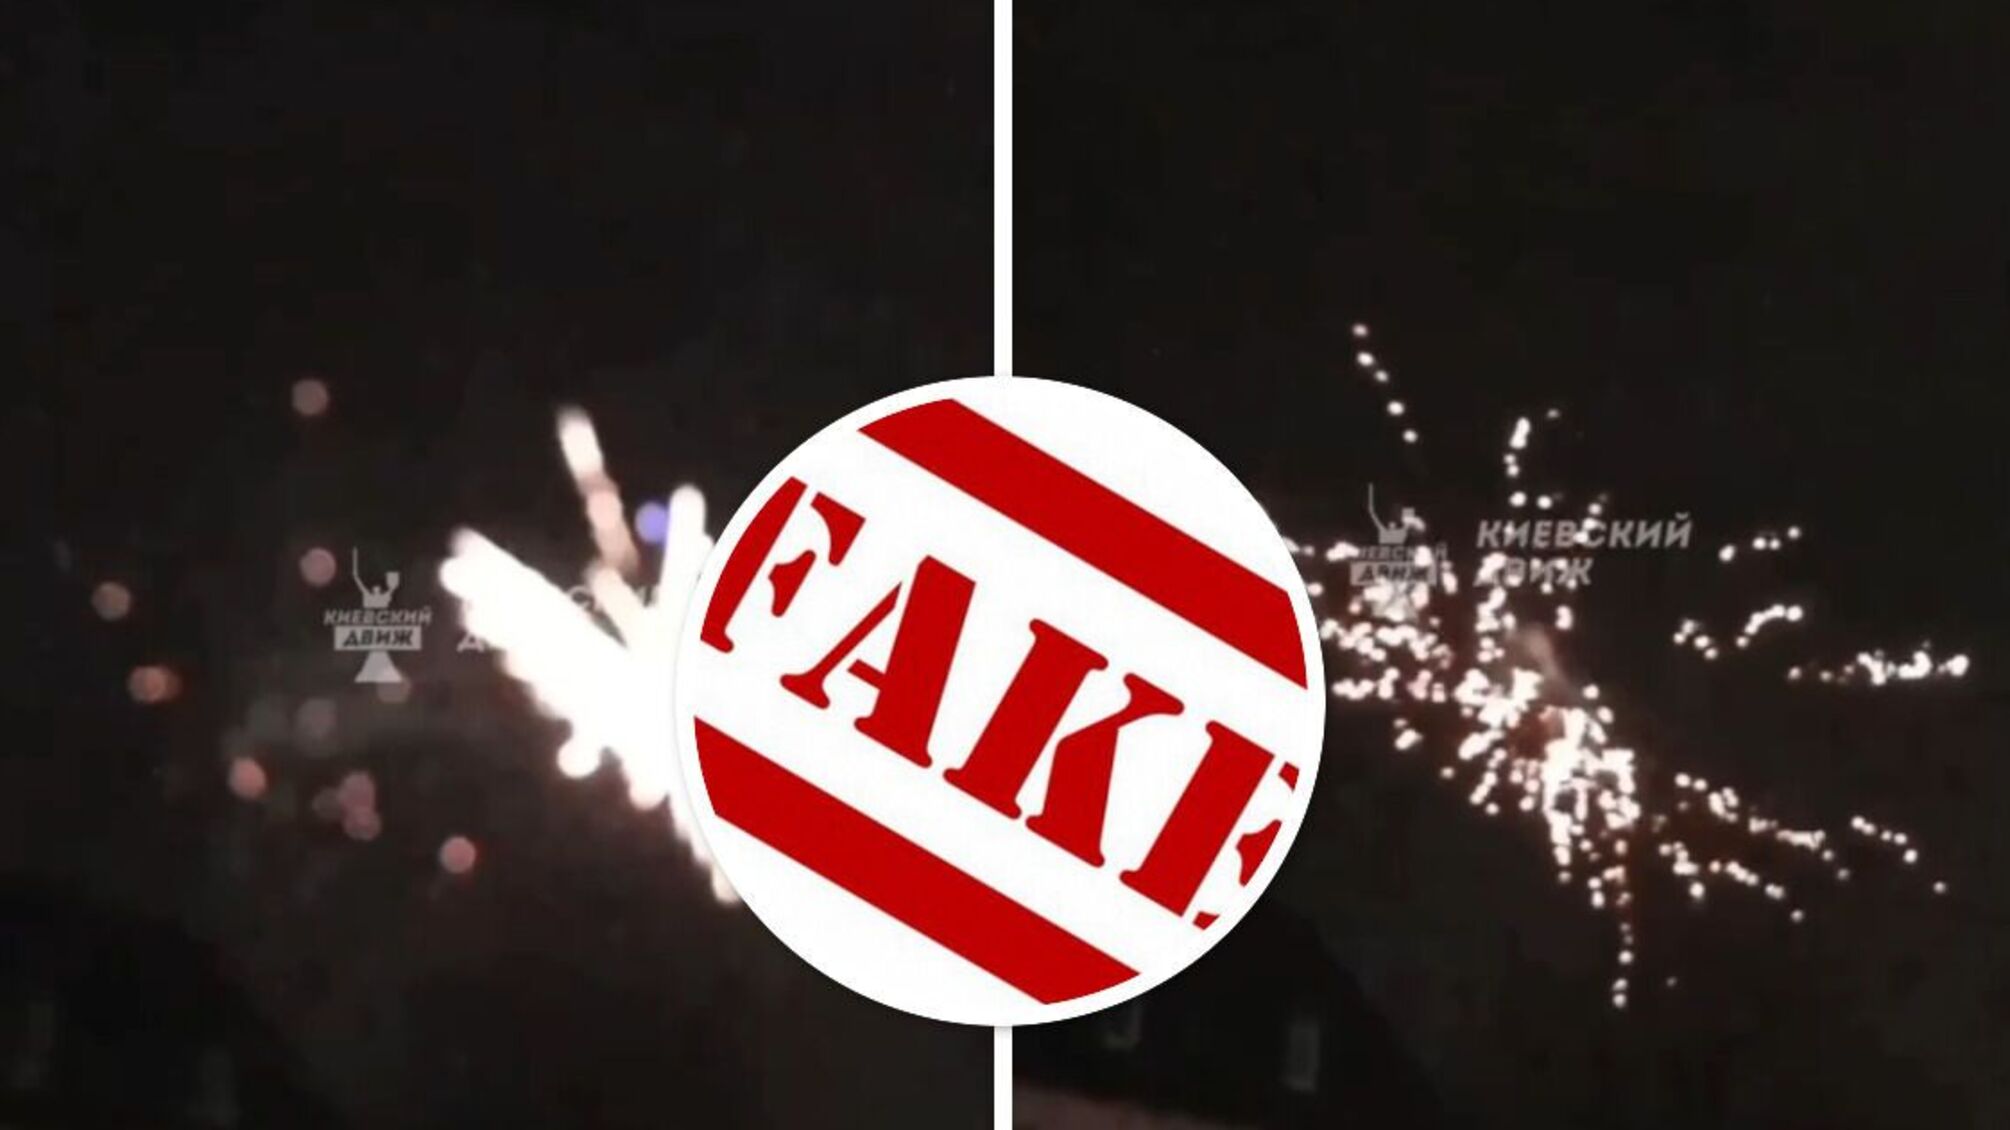 Запуск фейерверков в новогоднюю ночь: столичные полицейские развенчали фейк